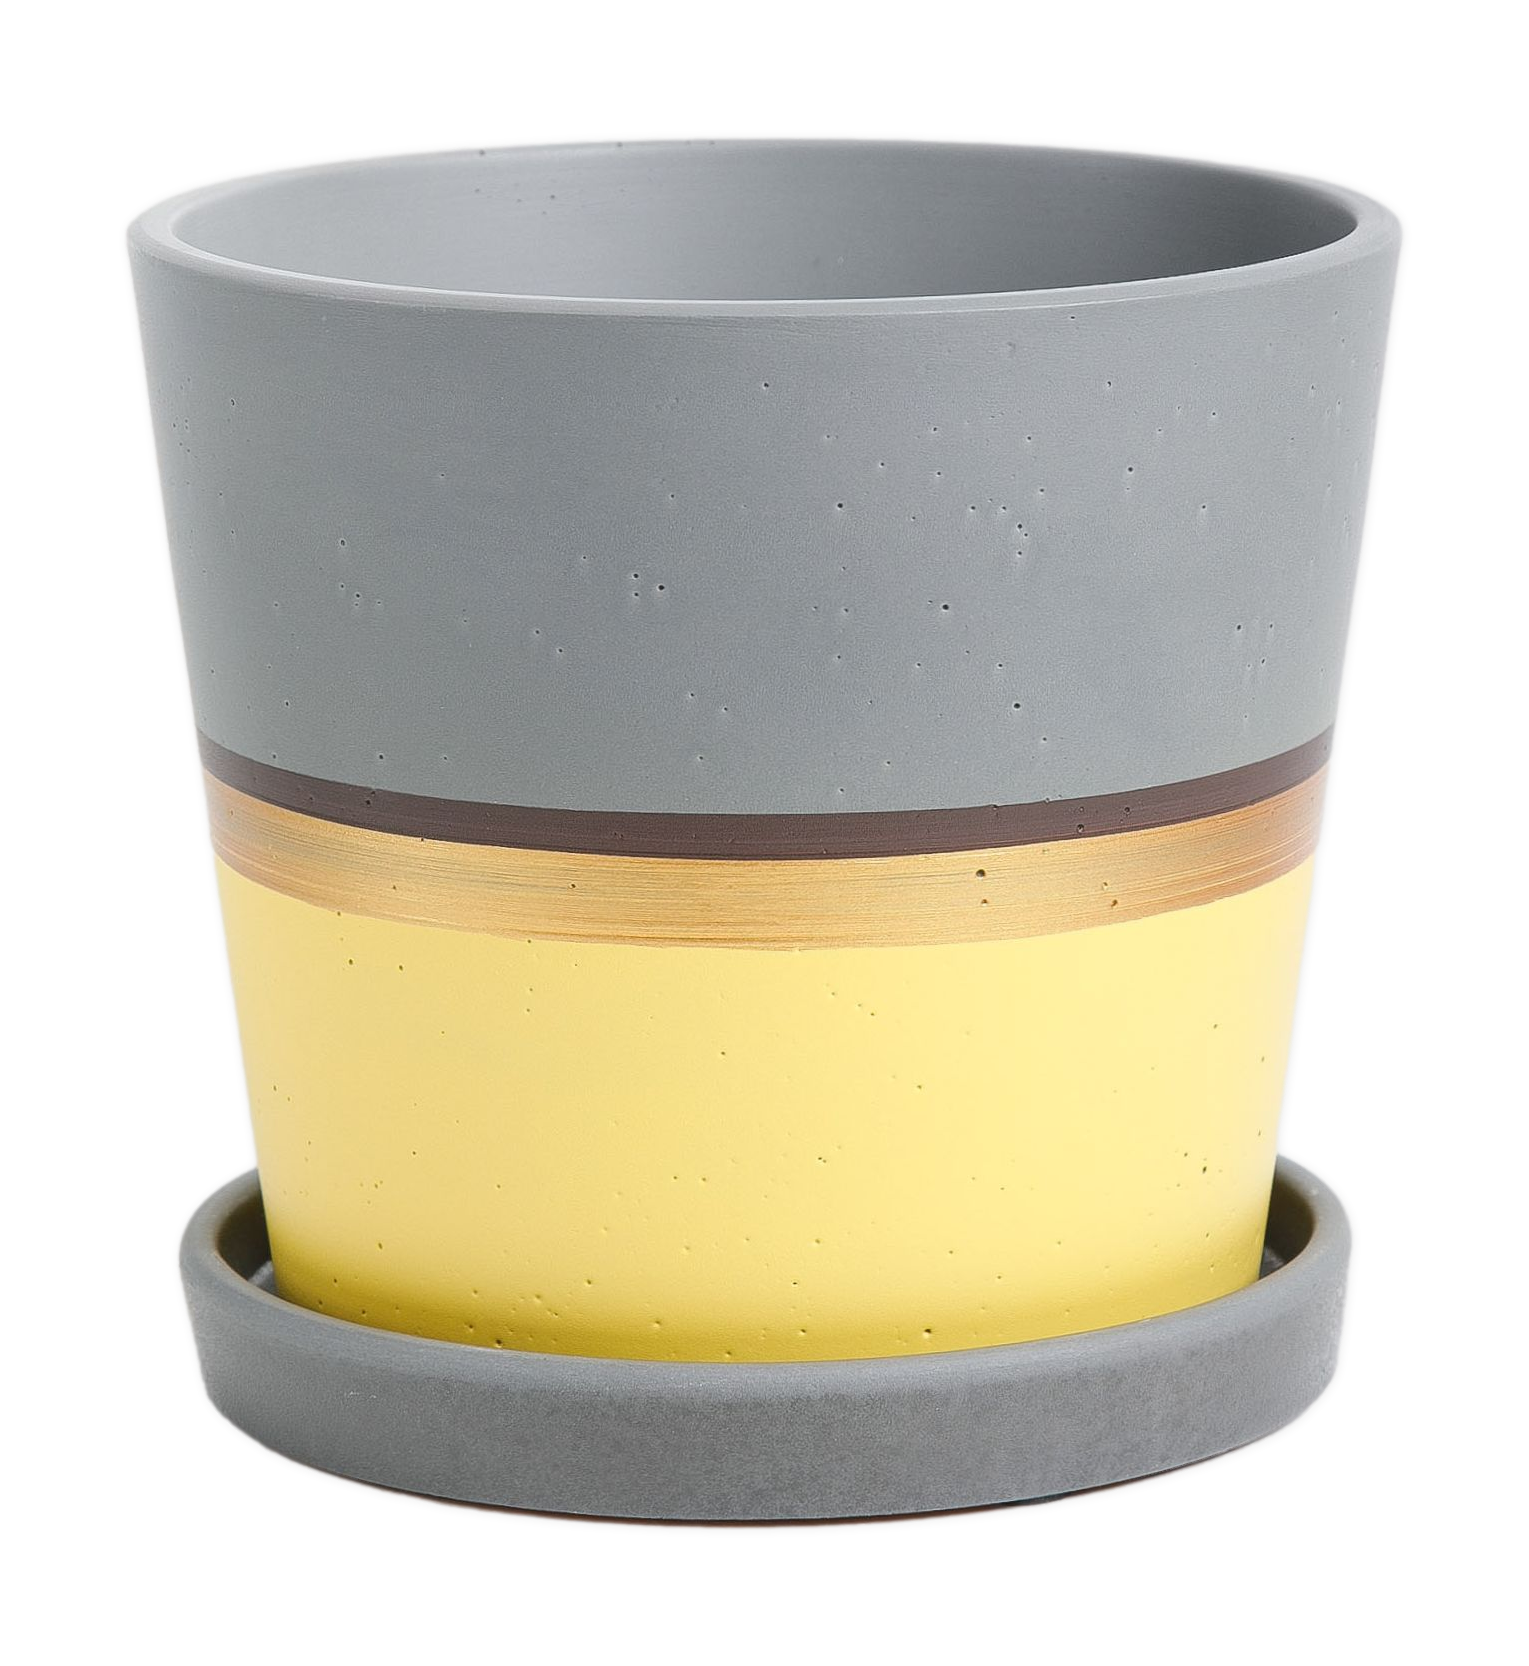 Цветочный горшок Miss Pots Лувр КБ-К2-164-02 1,2 л желтый серый 1 шт.